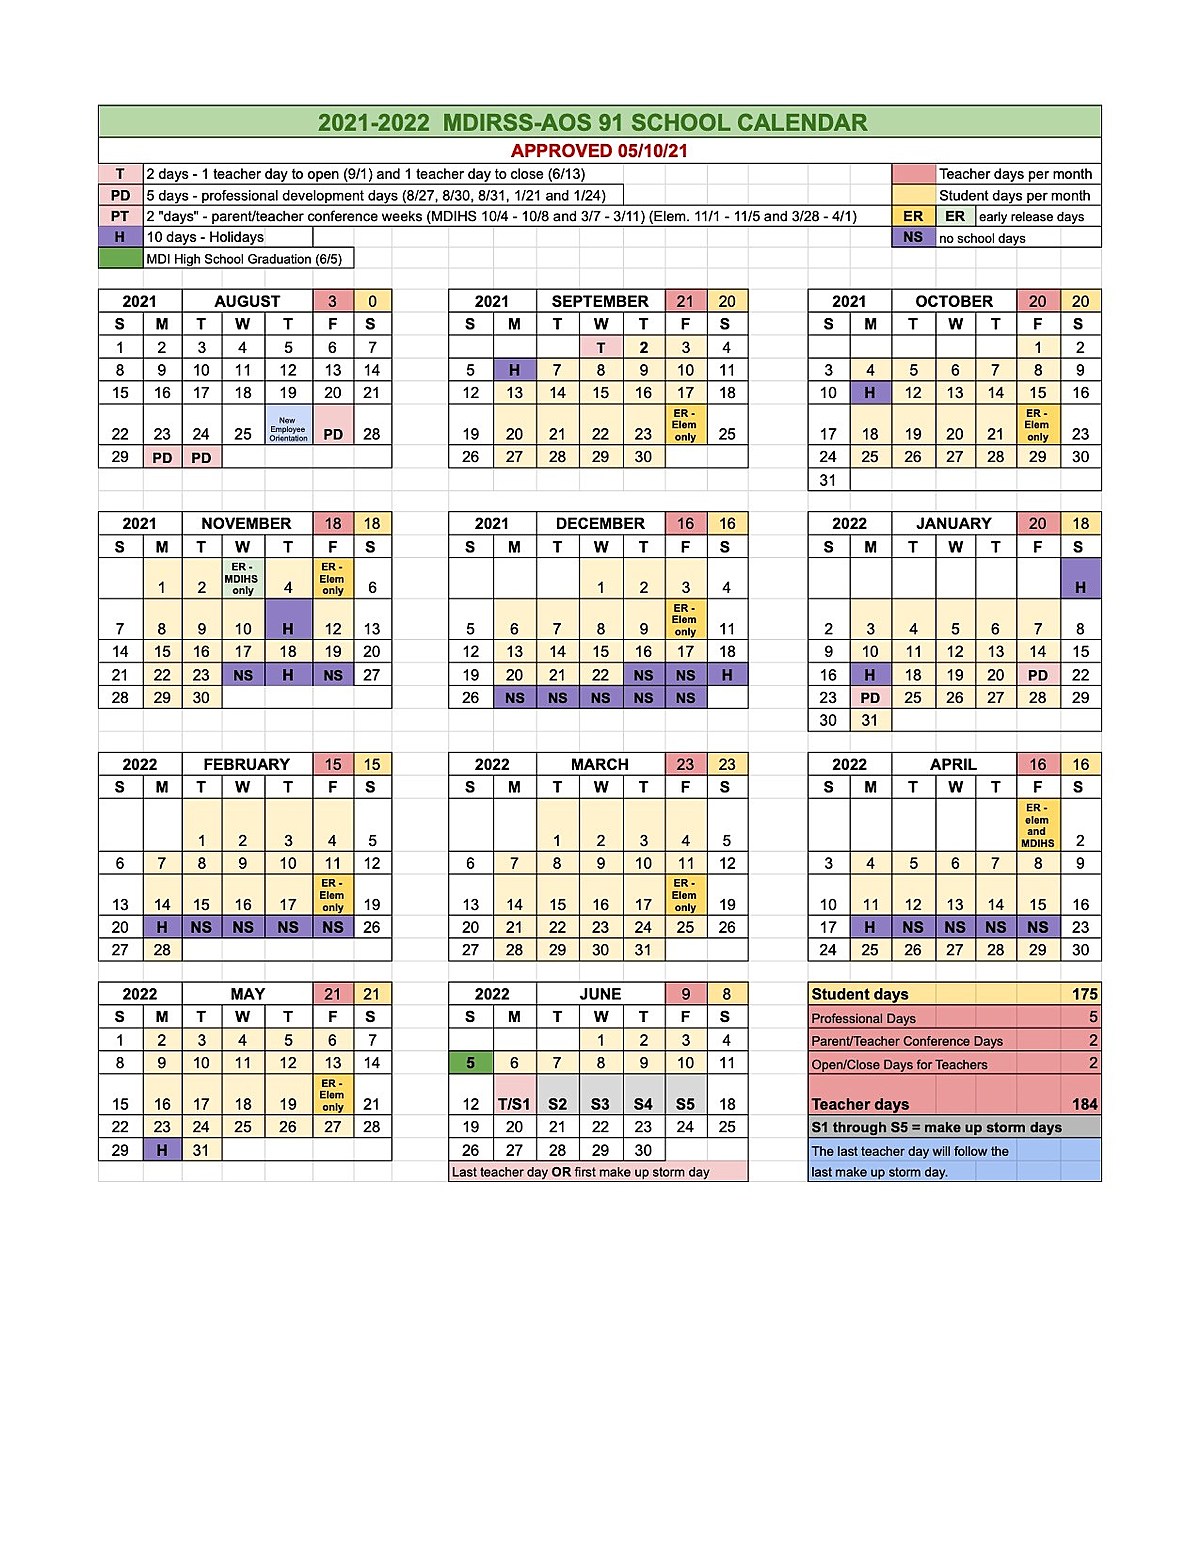 20212022 School Calendar for AOS 91